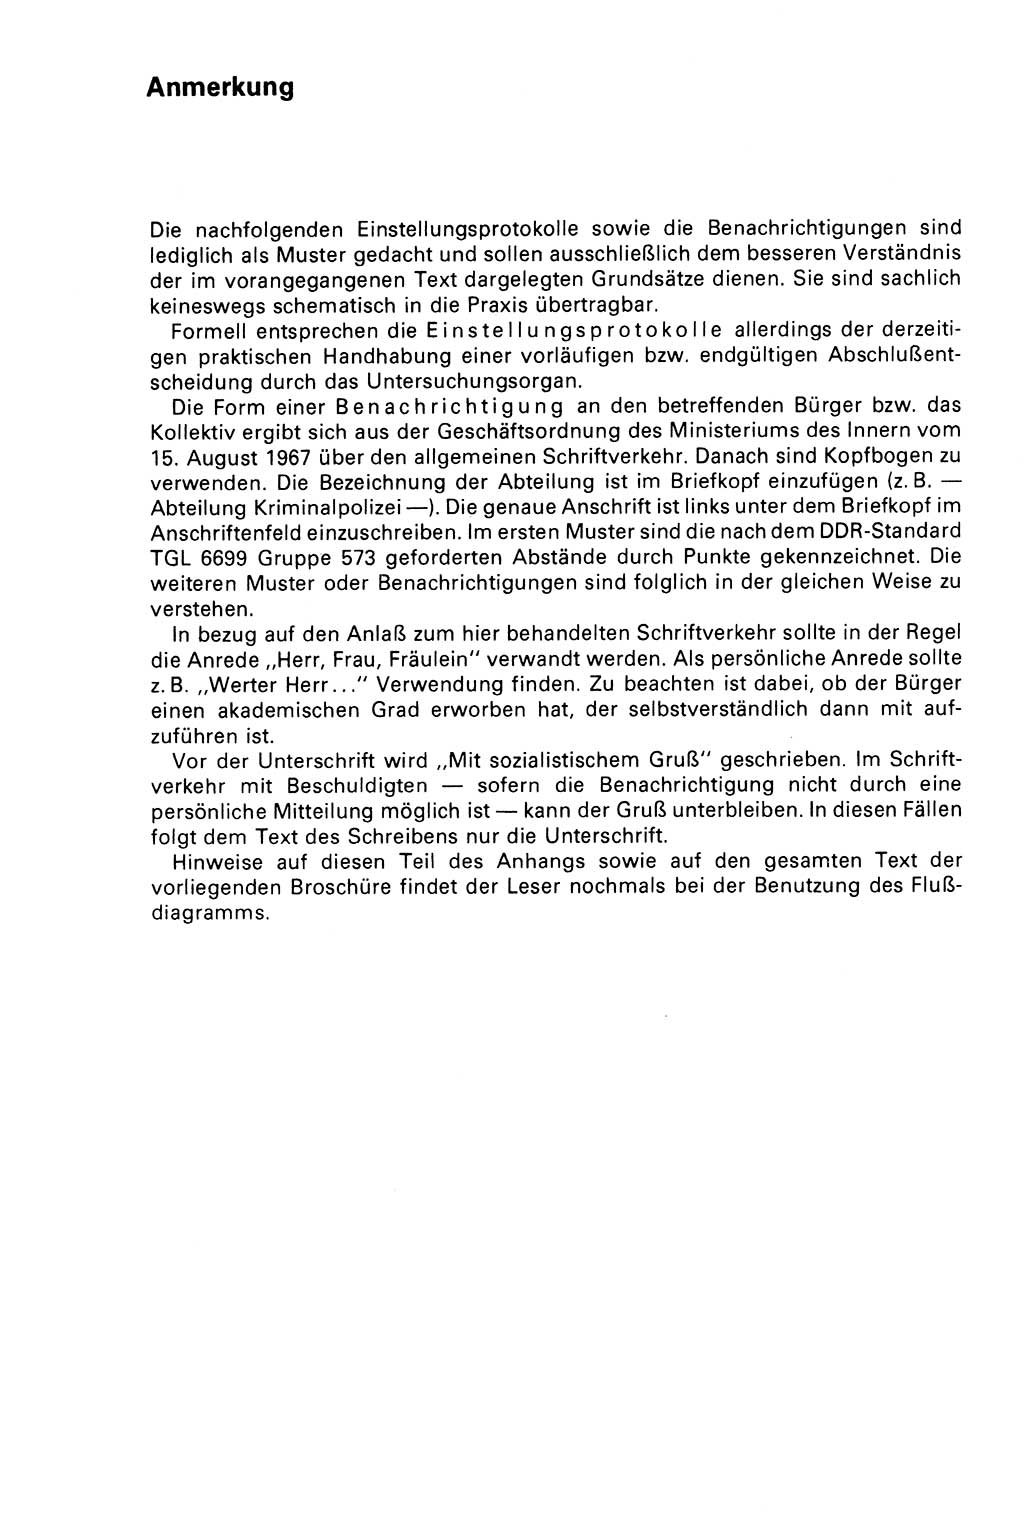 Der Abschluß des Ermittlungsverfahrens [Deutsche Demokratische Republik (DDR)] 1978, Seite 142 (Abschl. EV DDR 1978, S. 142)